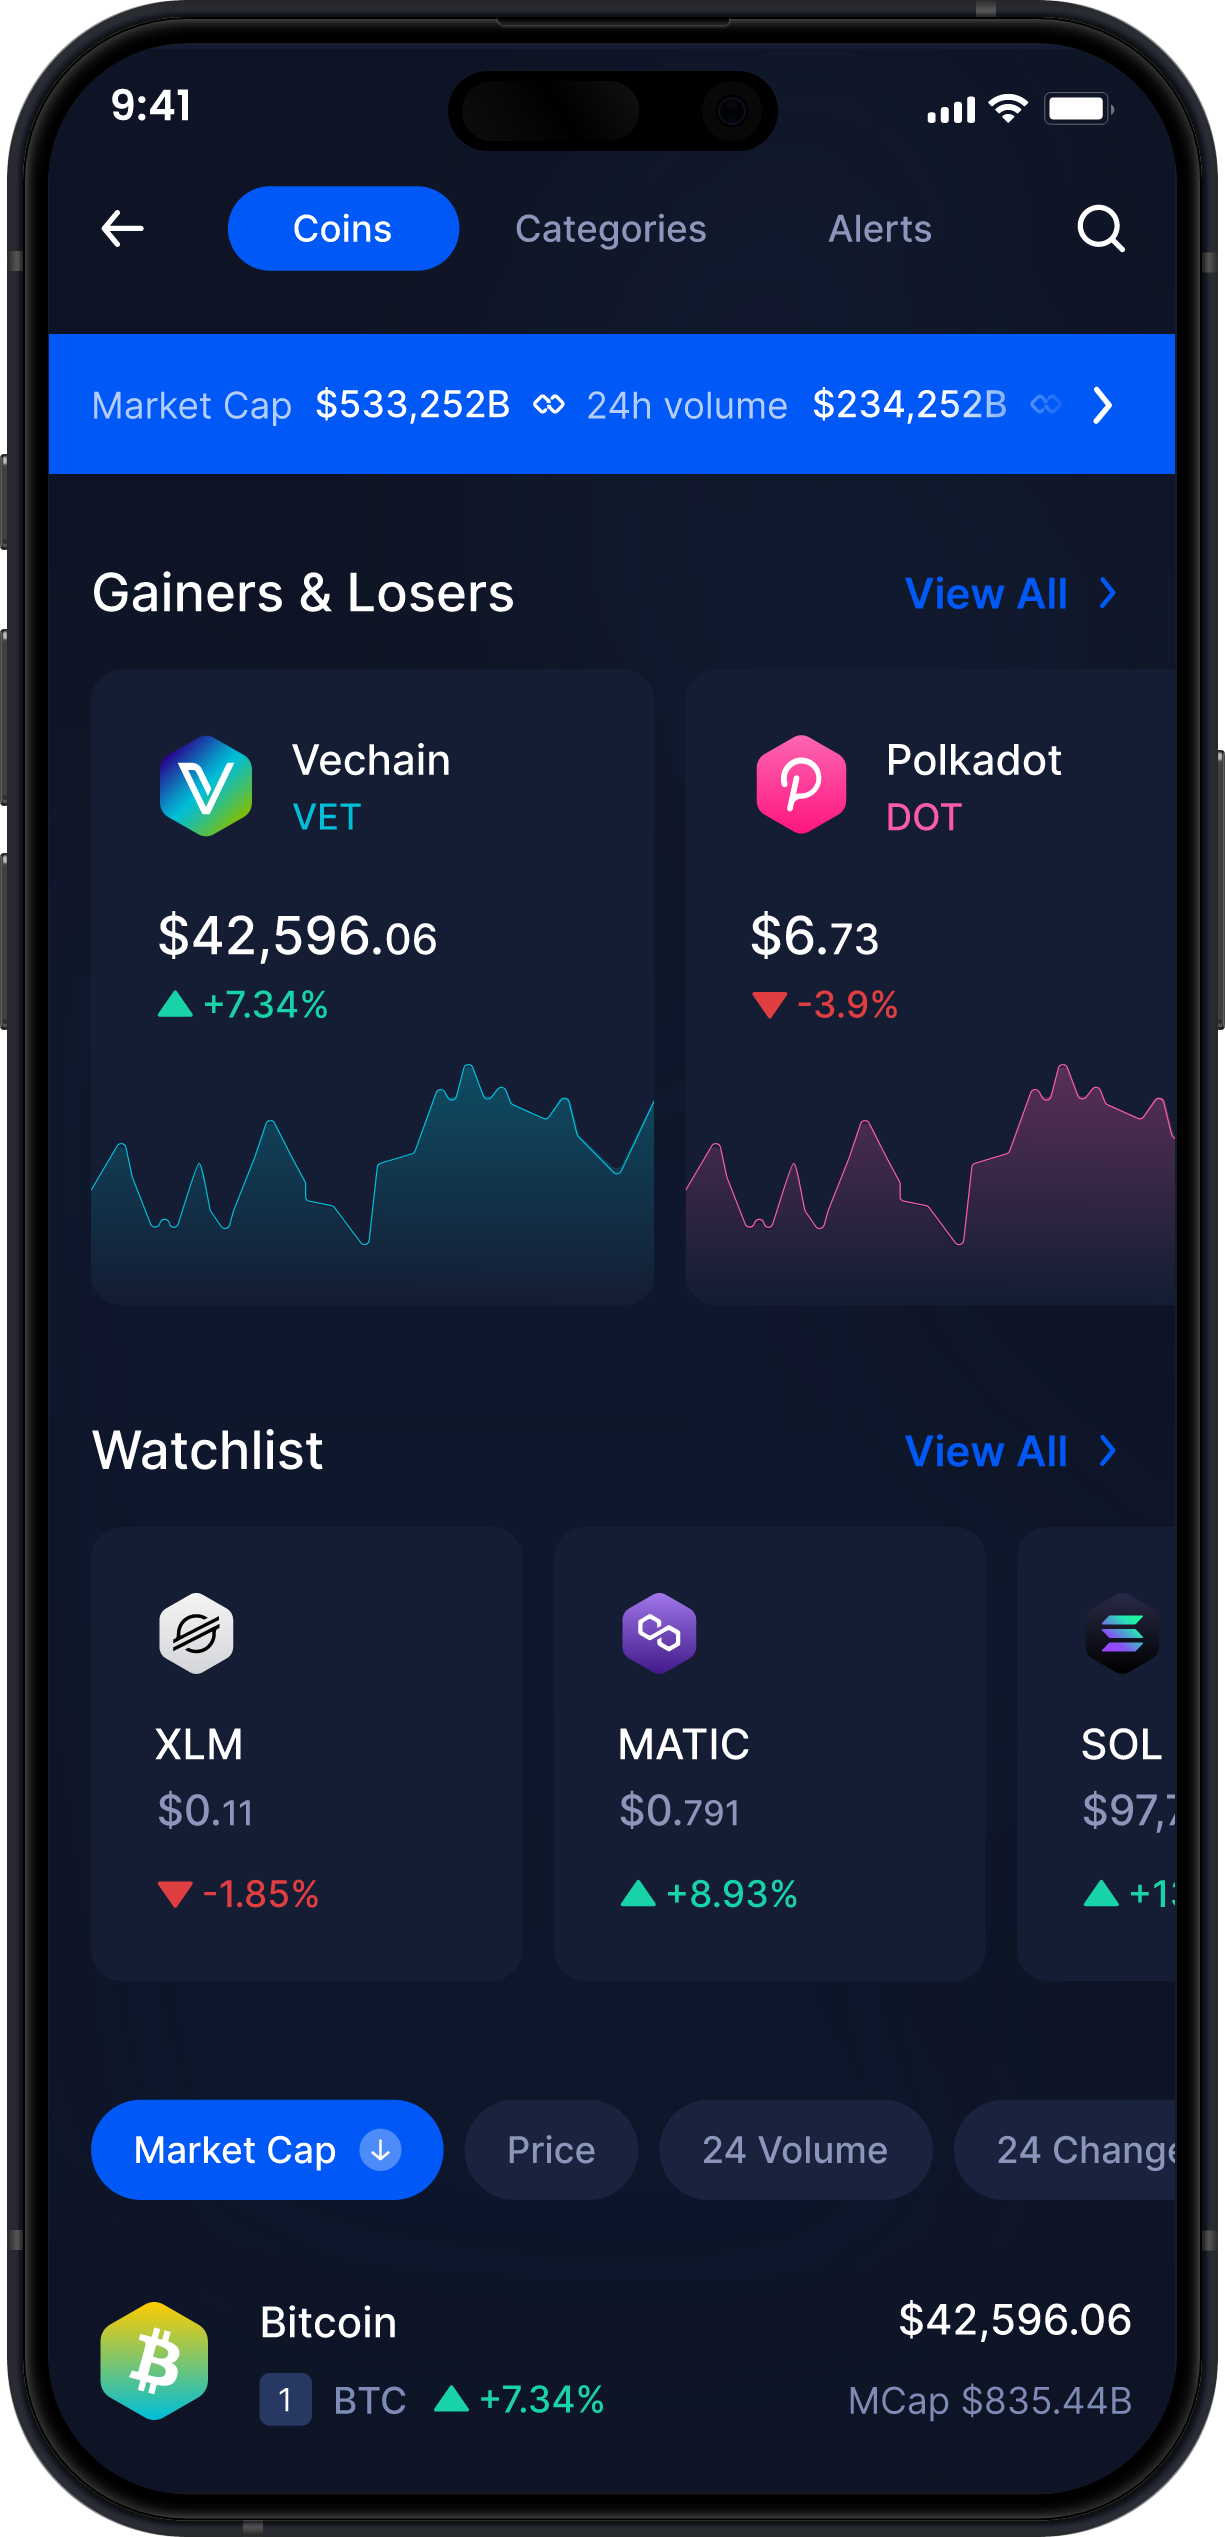 Infinity Mobile Vechain Wallet - Statistiche e Monitoraggio VET